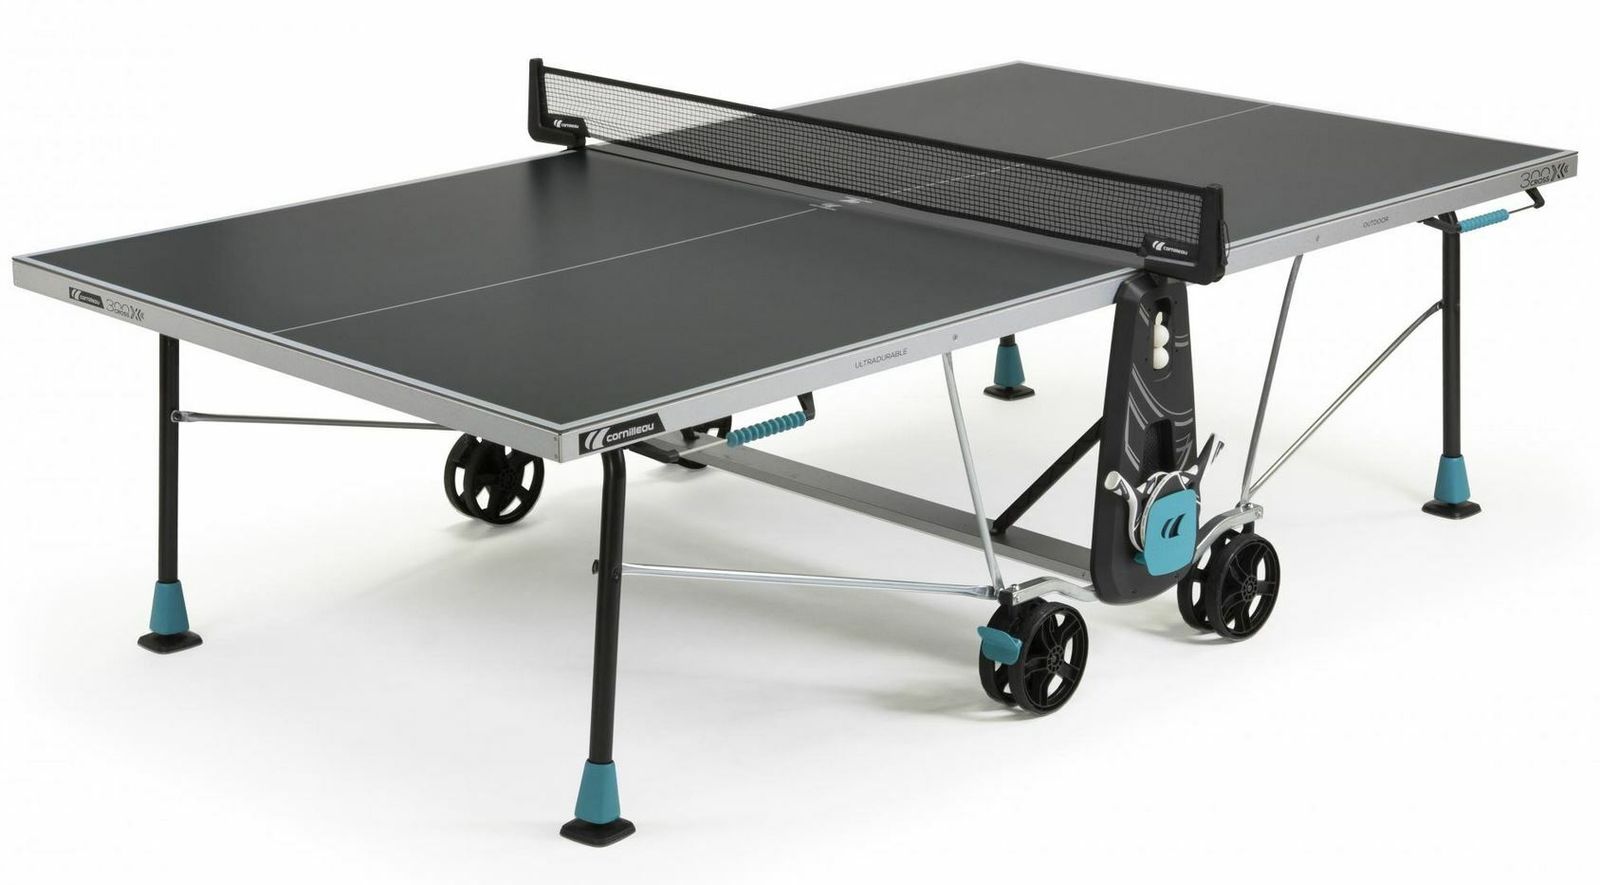 Теннисный стол Cornilleau всепогодный 300X Outdoor grey 5 mm фото №1